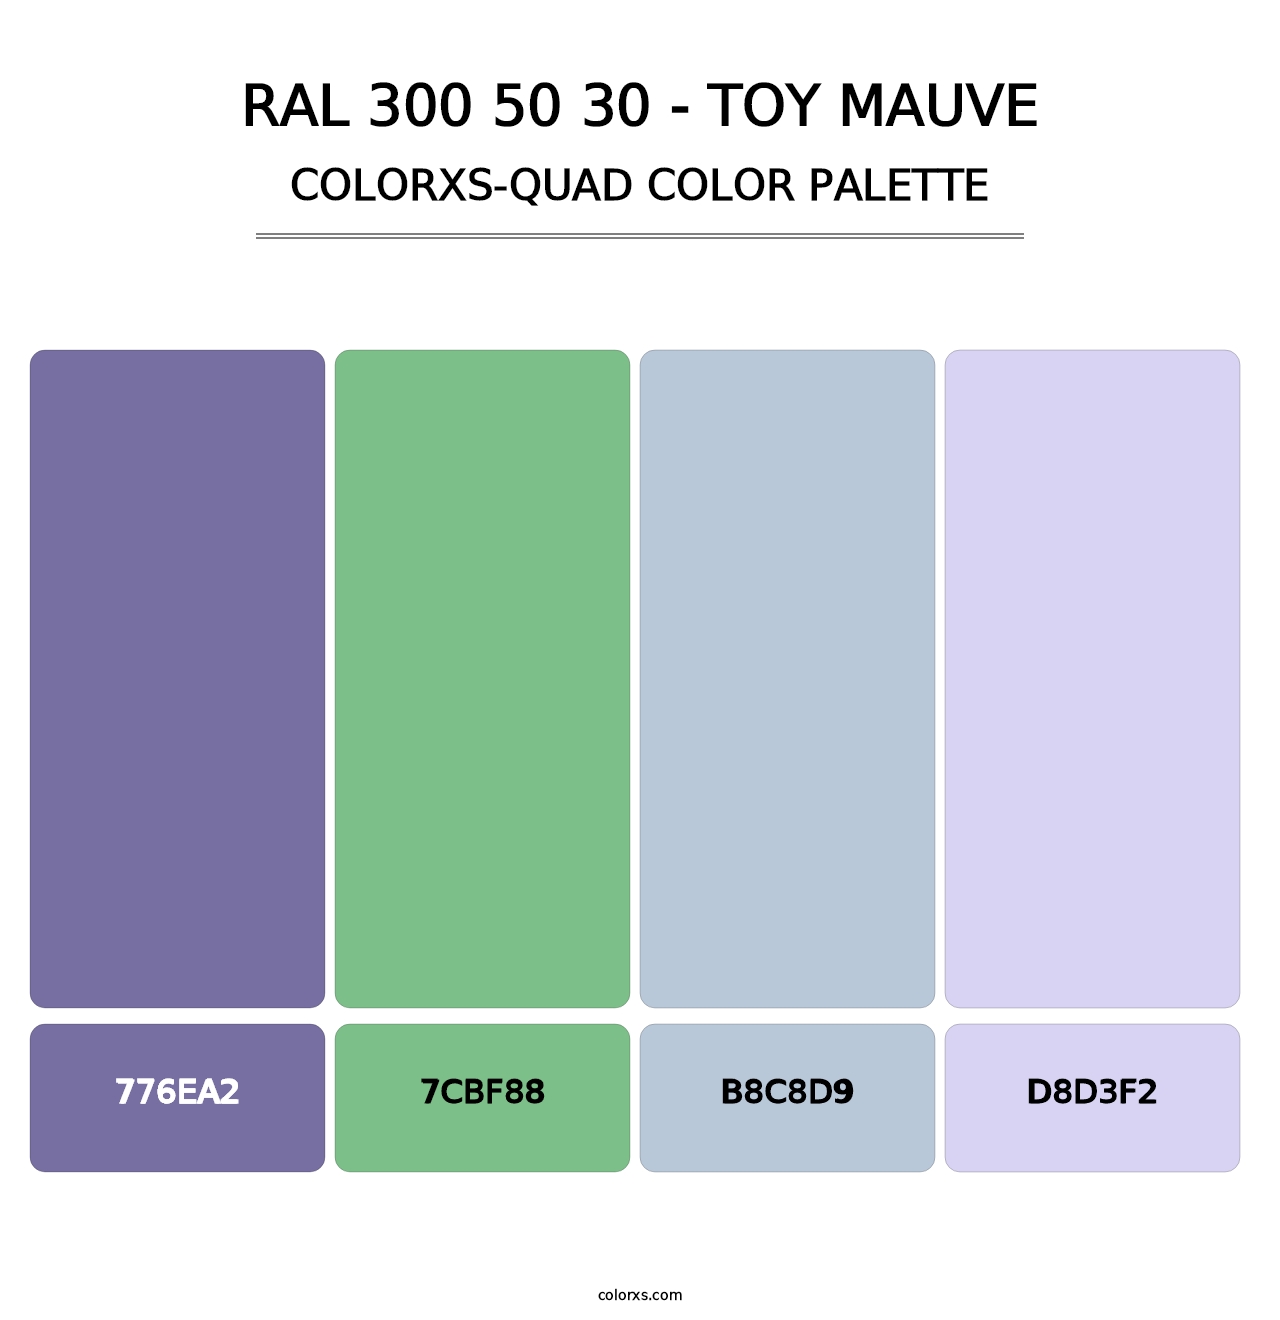 RAL 300 50 30 - Toy Mauve - Colorxs Quad Palette